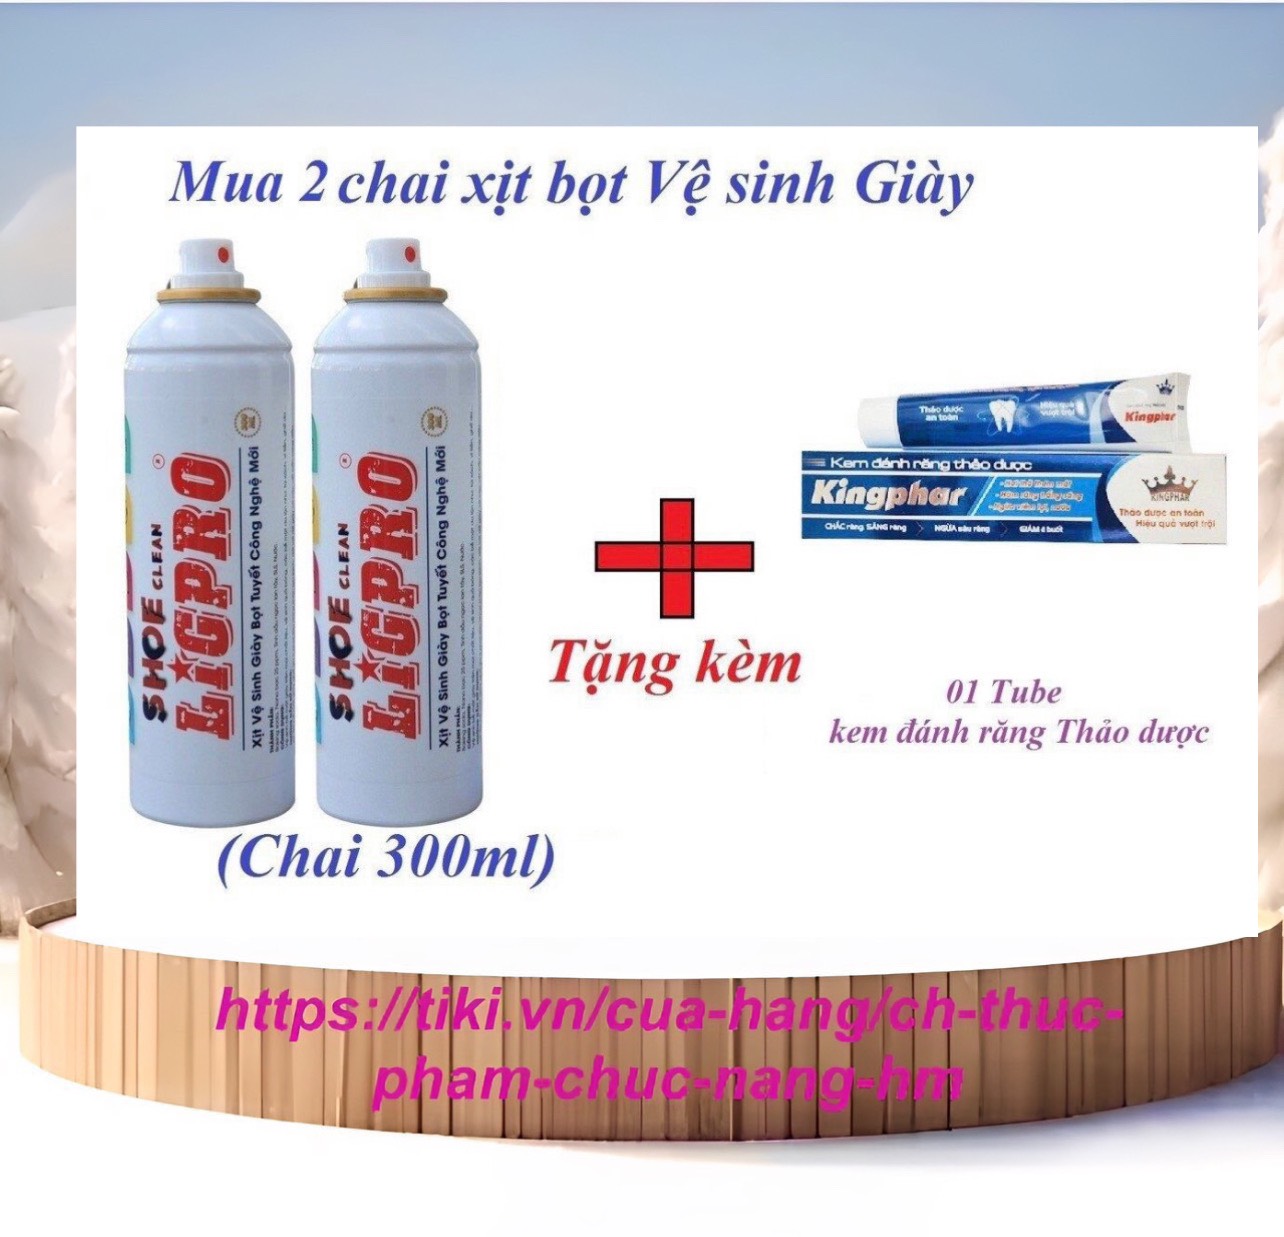 Hot Deal: Mua 2 chai xịt bọt Vệ sinh Giày Ligpro, chai 300ml, tặng kèm 1 tube kem đánh răng thảo dược chống ê buốt